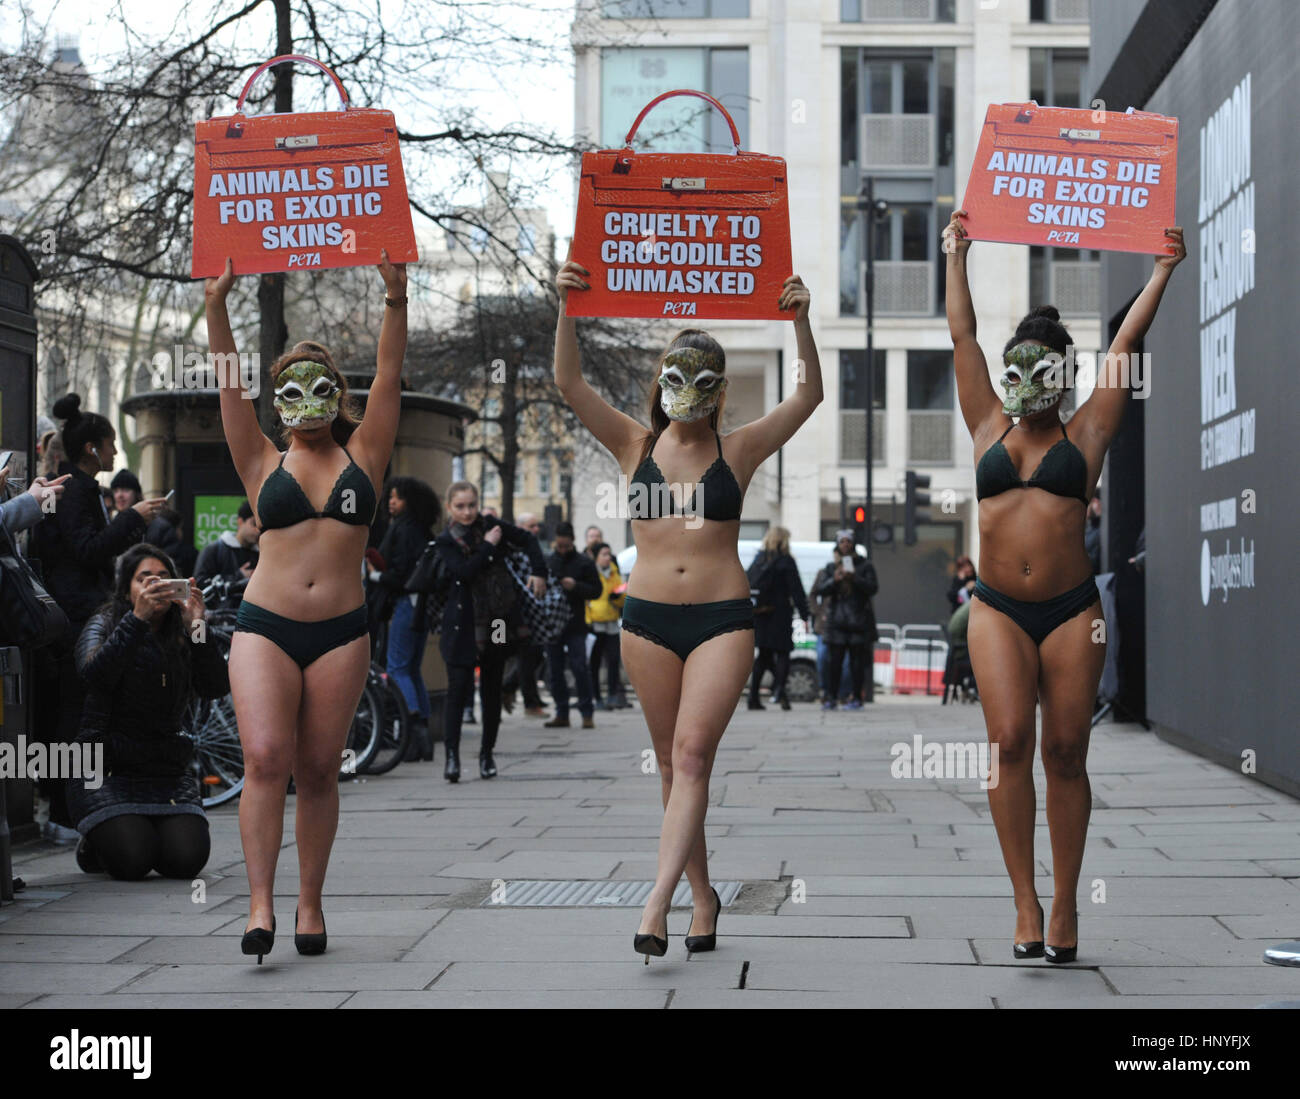 Aktivisten von PETA protestieren gegen den Einsatz von exotischen Tierhäuten in der Modebranche außerhalb 180 Strand, im Zentrum von London, am Anfang der London Fashion Week. Stockfoto